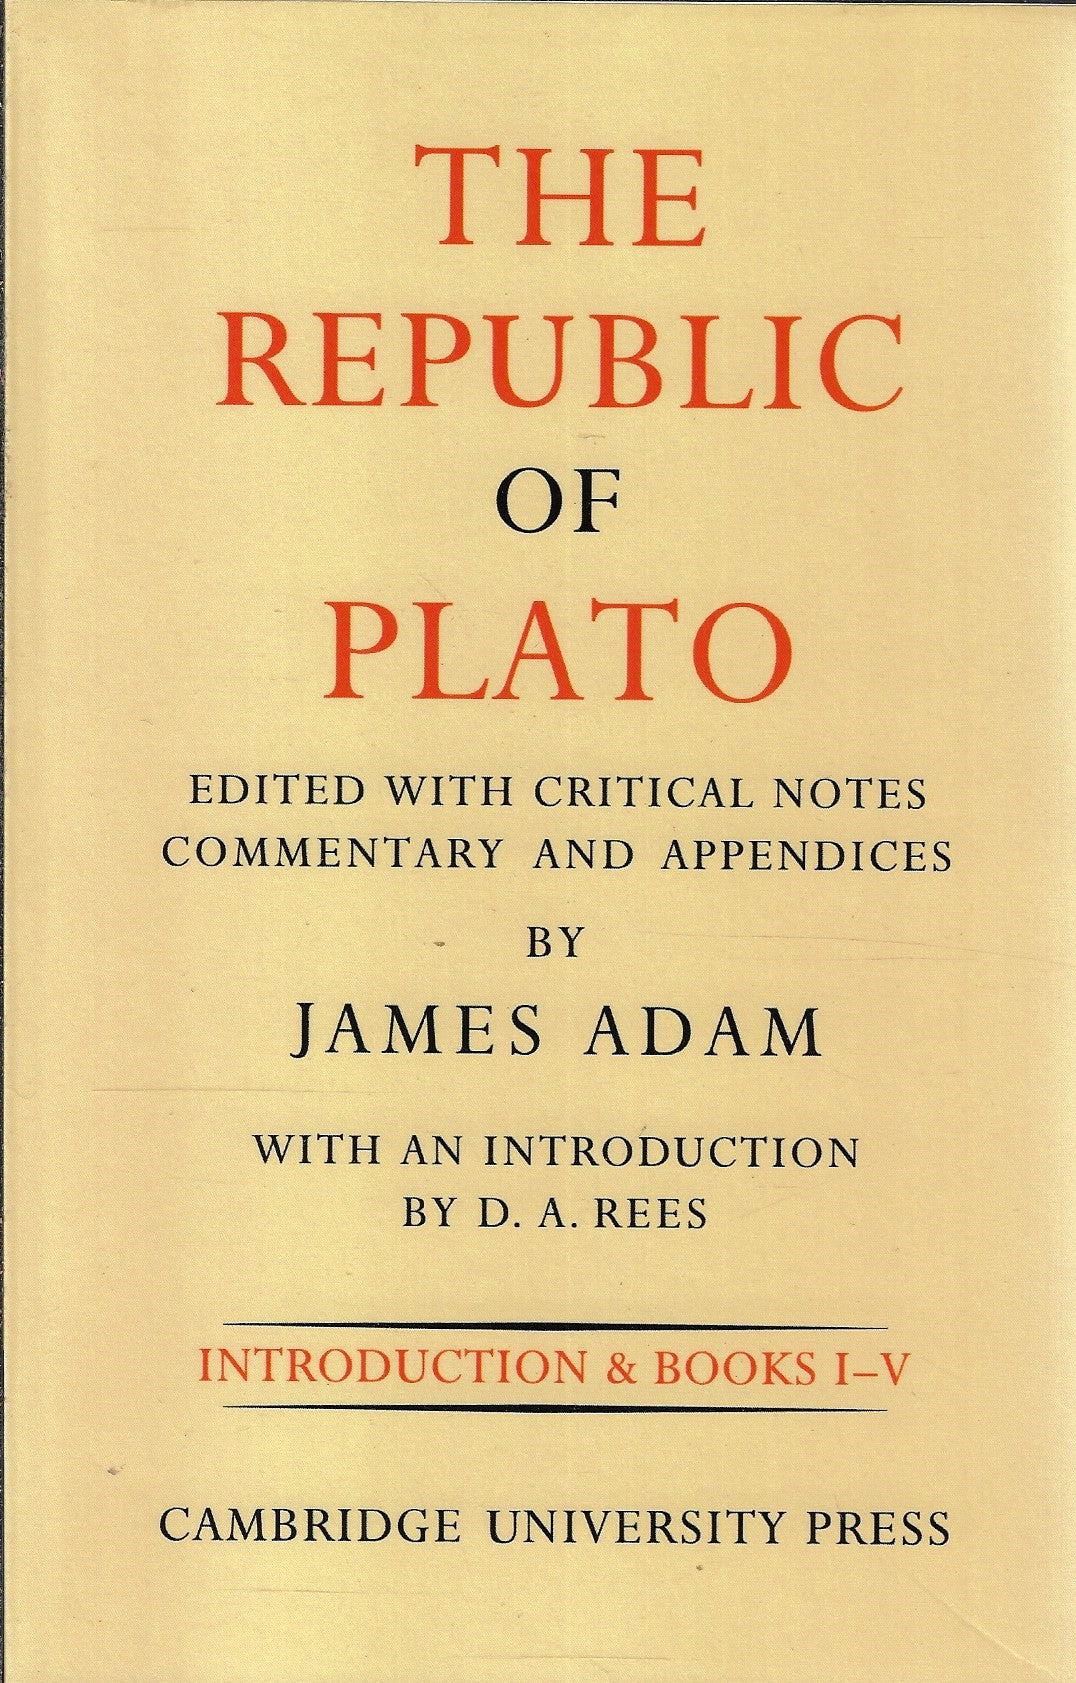 The Republic of Plato Books I-V and VI-X & Indexes